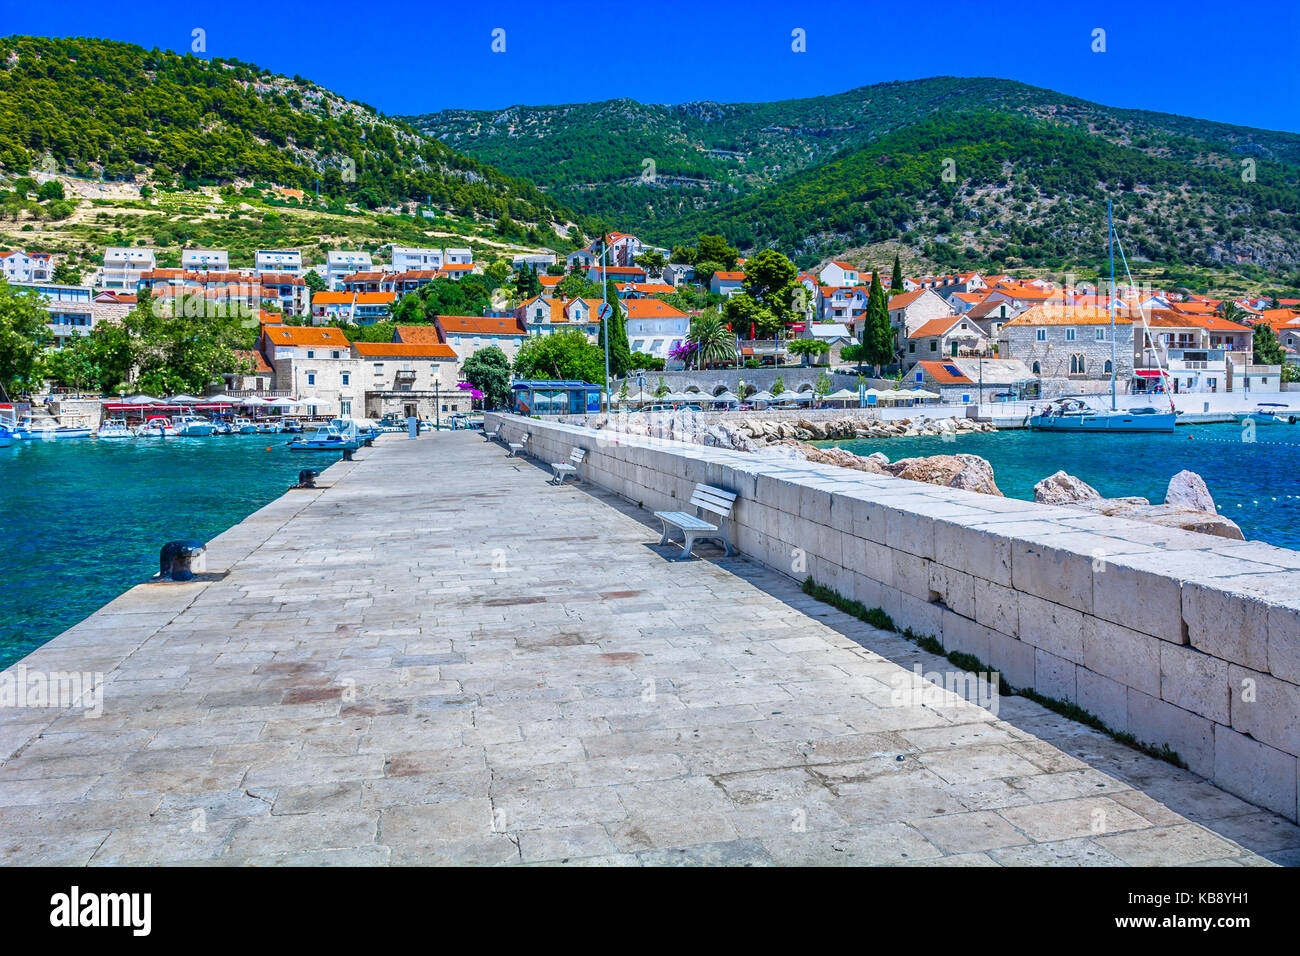 Paysage méditerranéen en ville bol, célèbre station balnéaire de voyage de luxe en Croatie, l'île de Brac. Banque D'Images